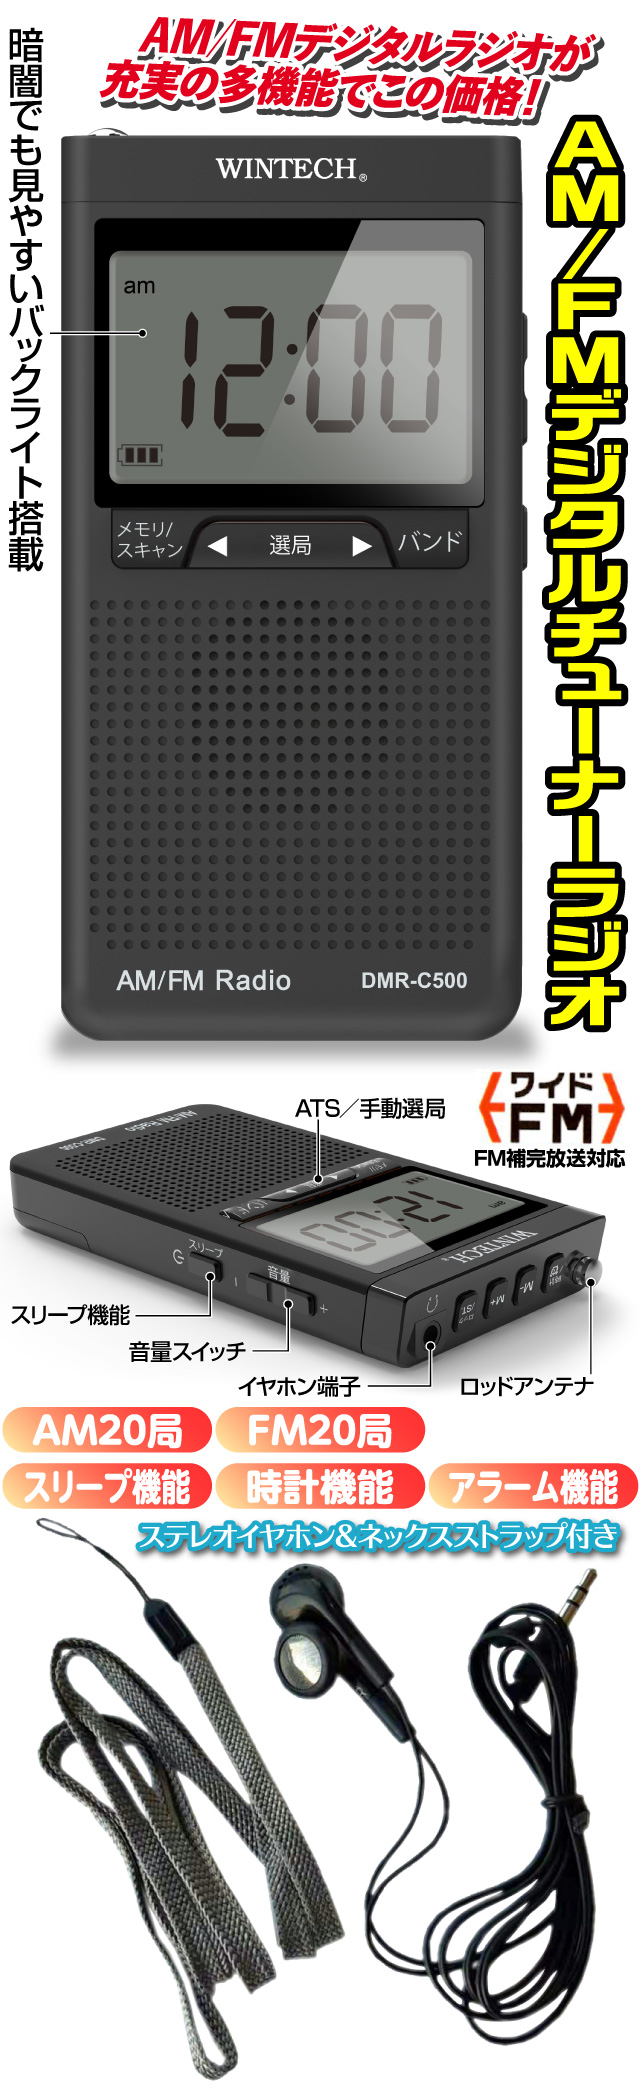 AM/FMデジタルチューナーラジオ